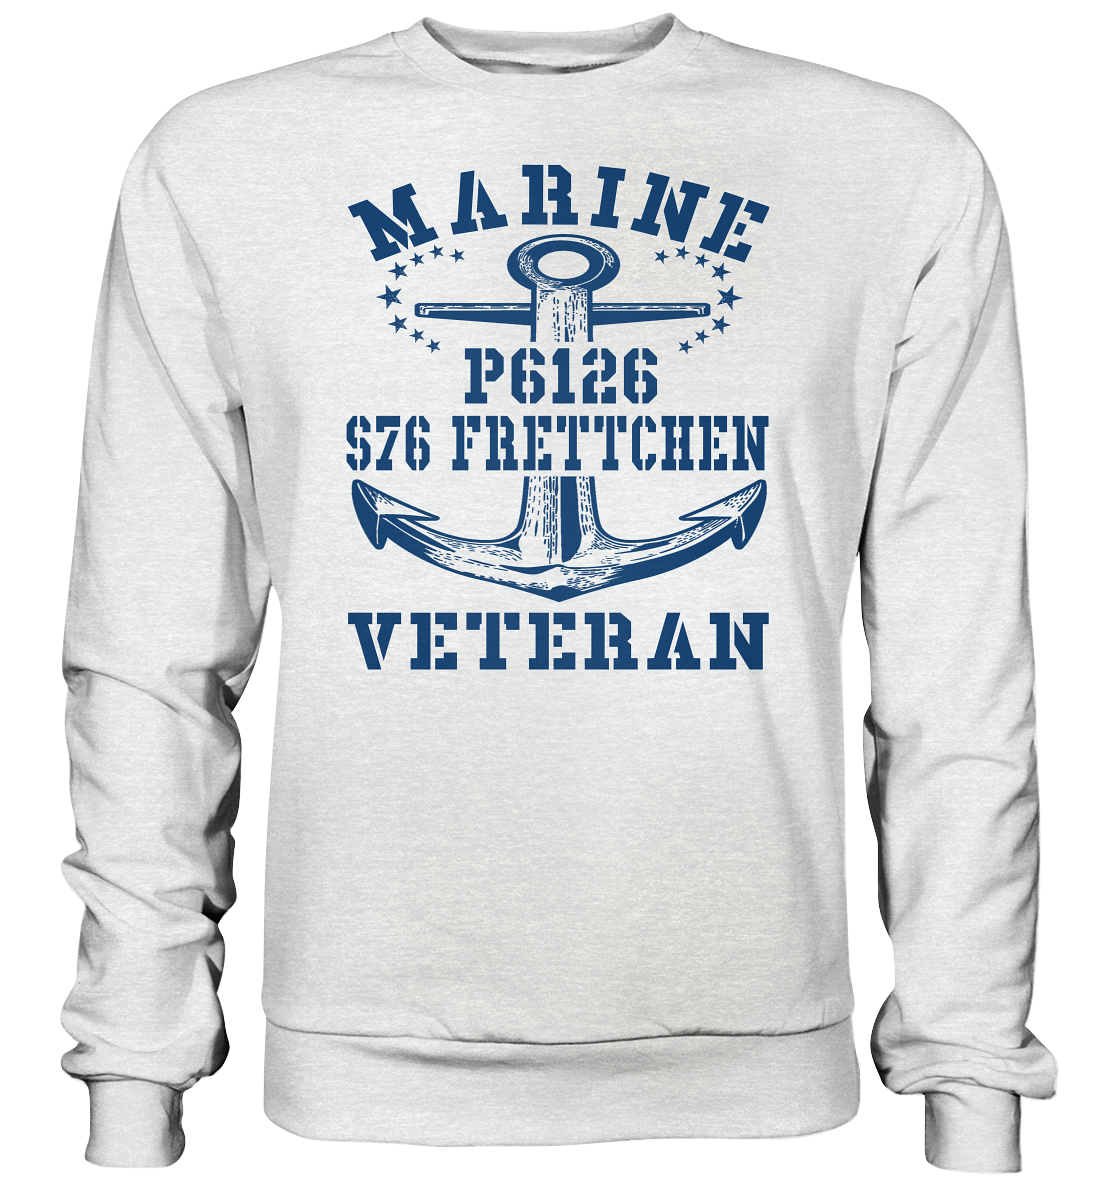 FK-Schnellboot P6126 FRETTCHEN Marine Veteran - Premium Sweatshirt